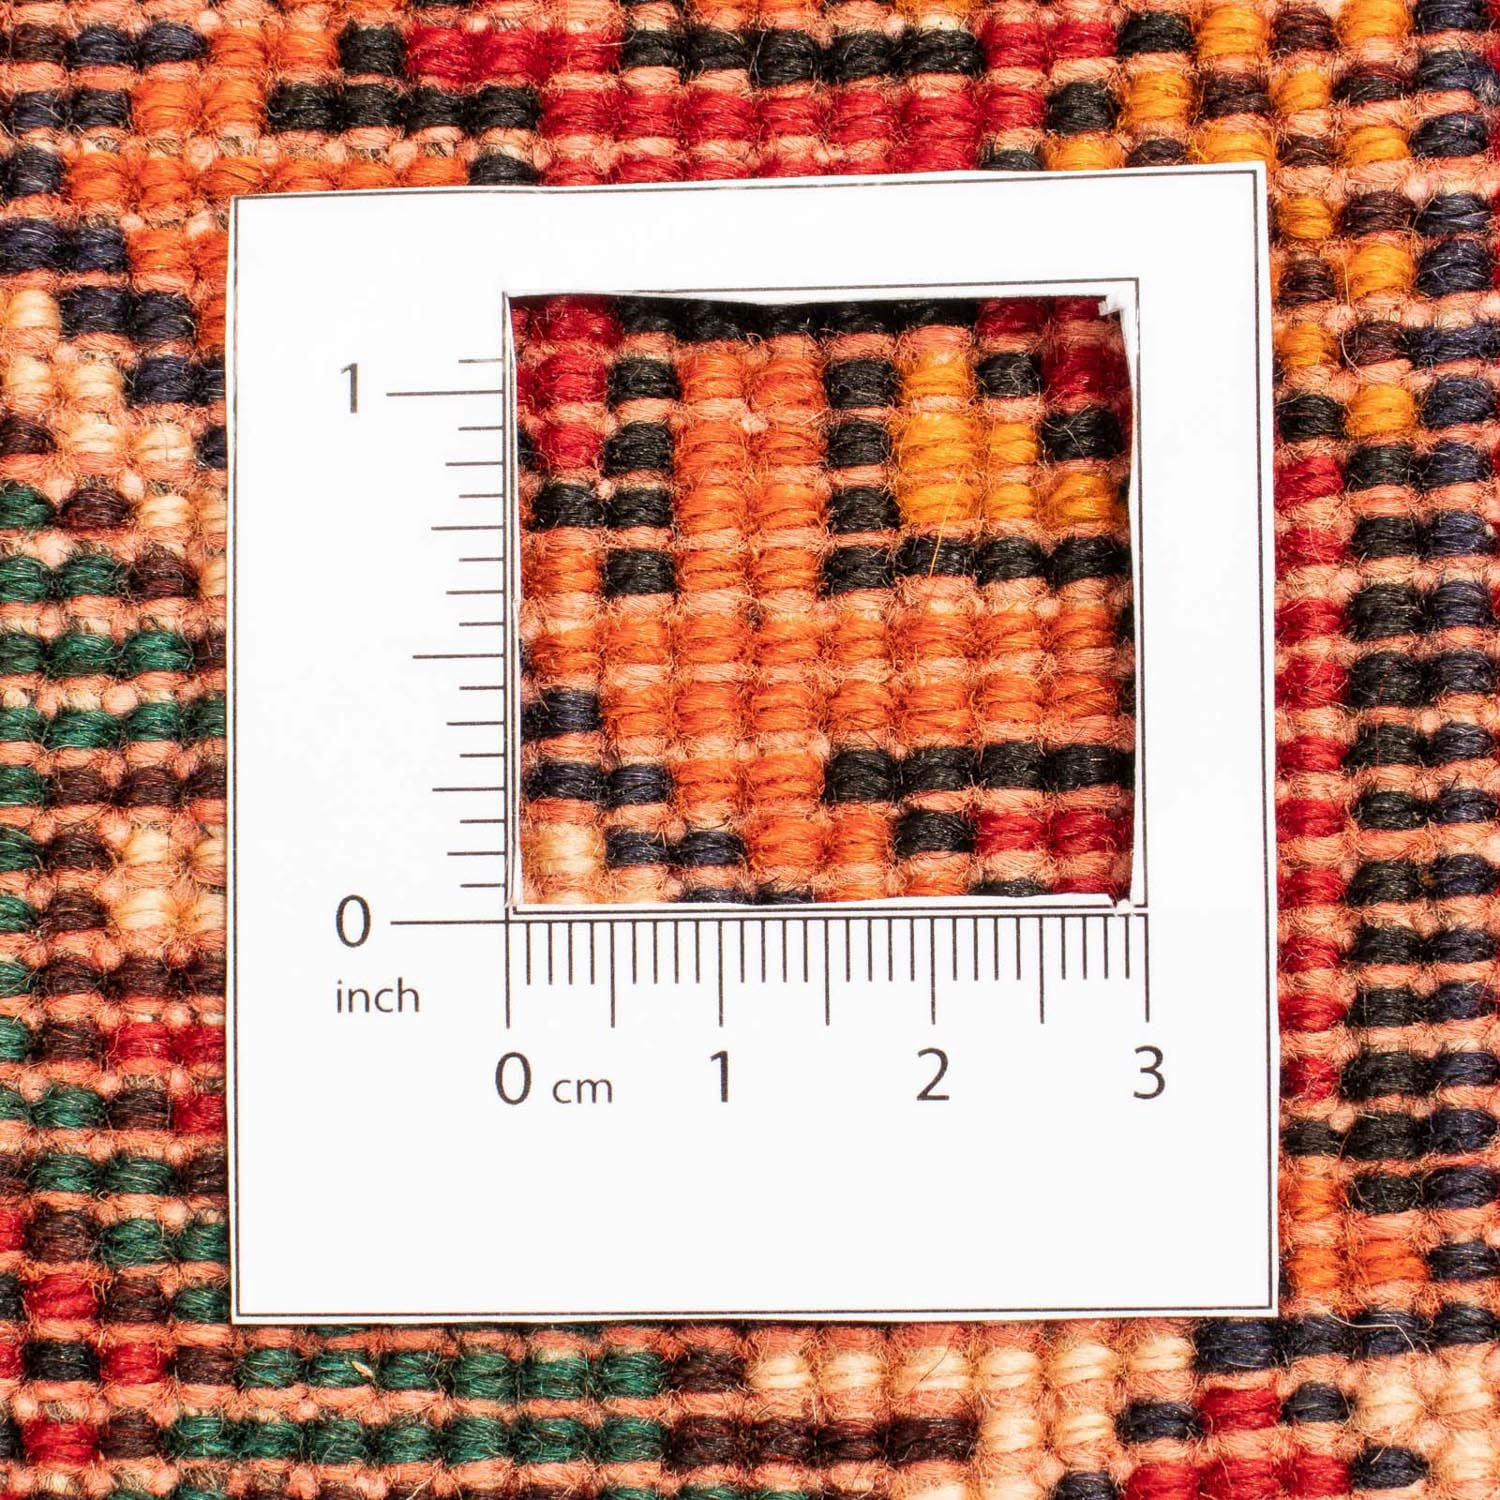 morgenland Wollteppich »Hosseinabad Medaillon Rosso chiaro 122 x 81 cm«, rechteckig, Handgeknüpft